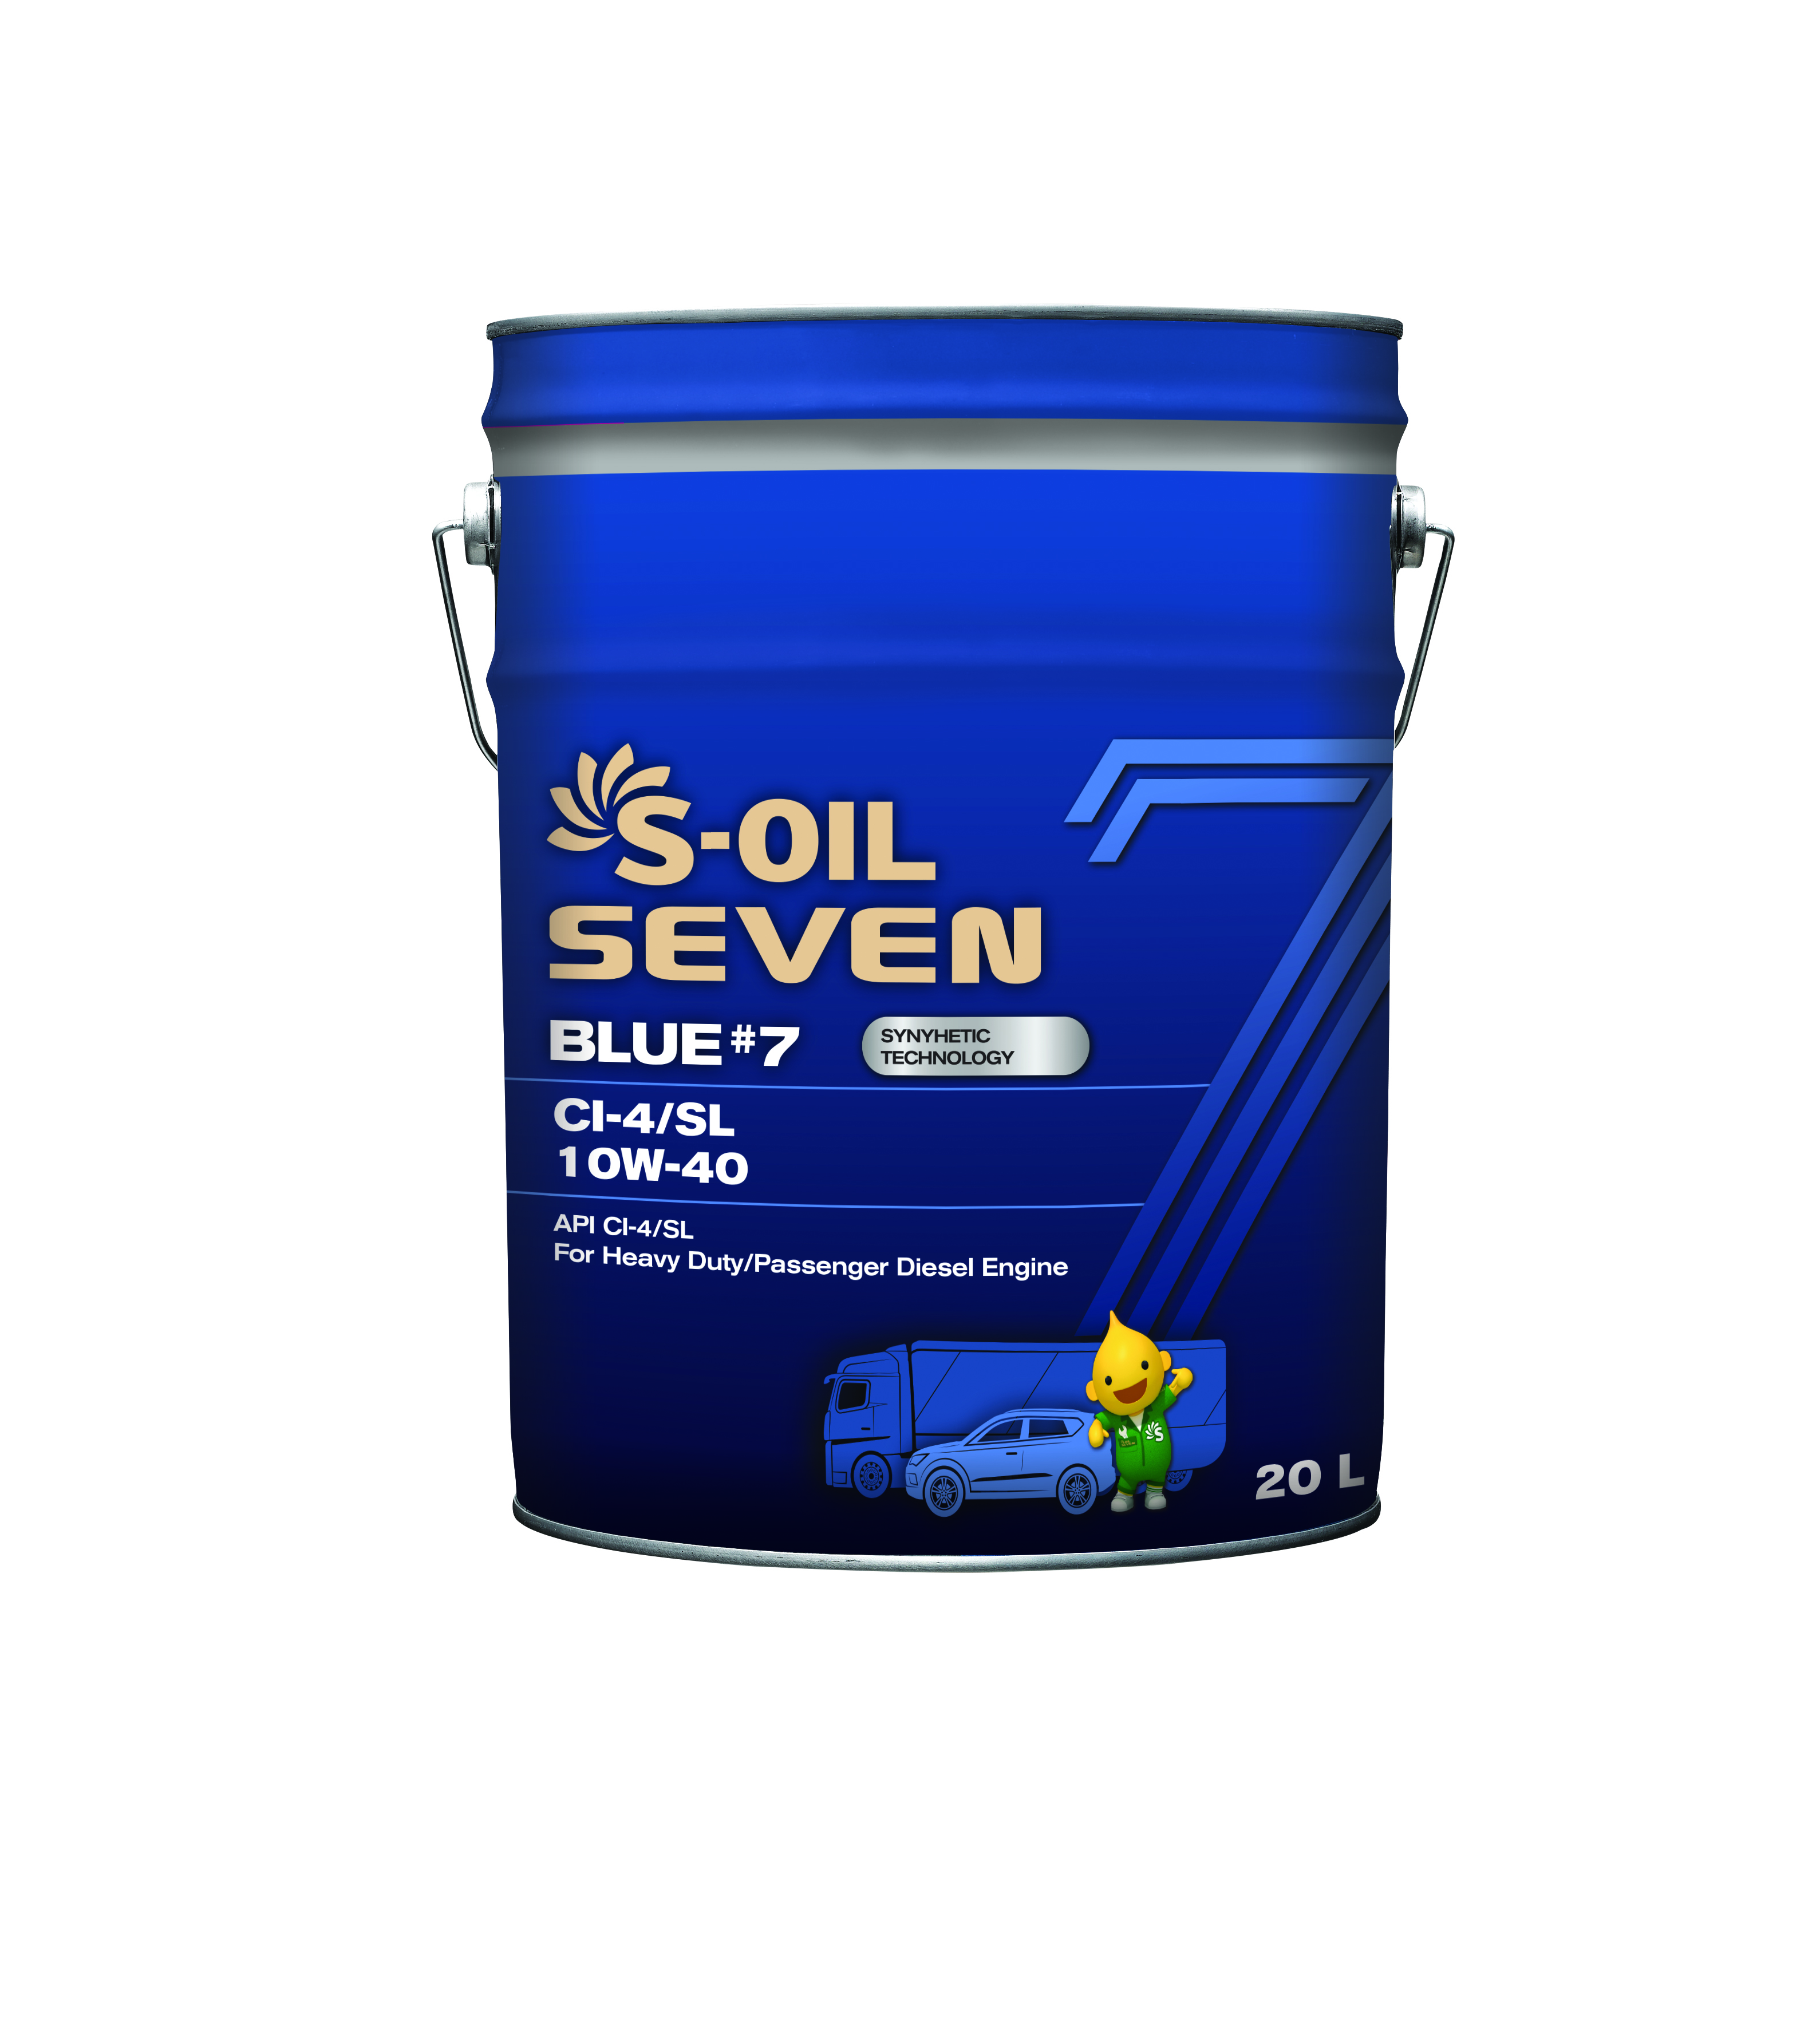 Масло Моторное S-OIL 7 BLUE #7 CI-4/SL 10W40 (20л), синтетика